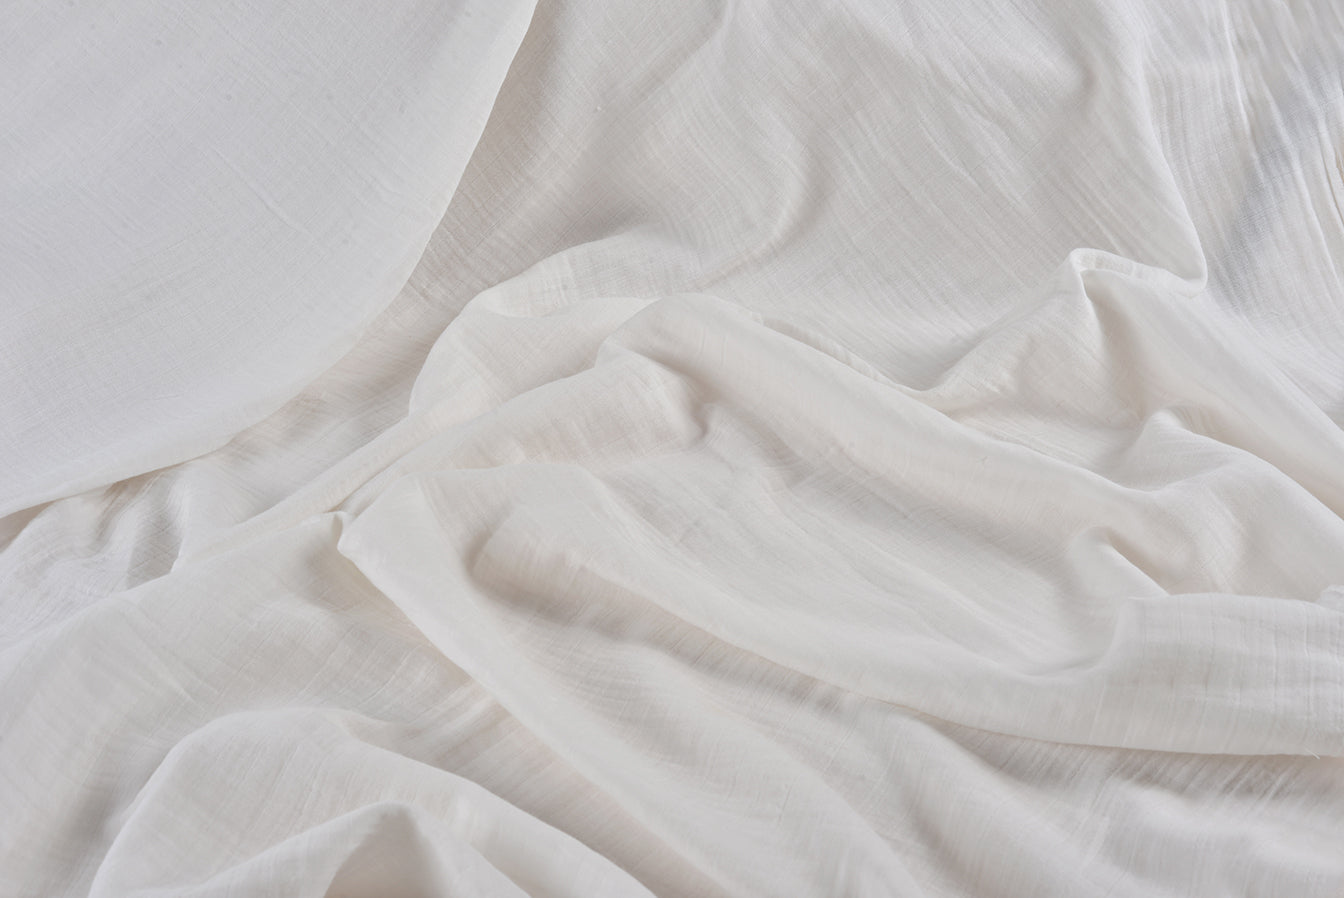 No.7 White Muslin | Double Gauzed Muslin Fabric